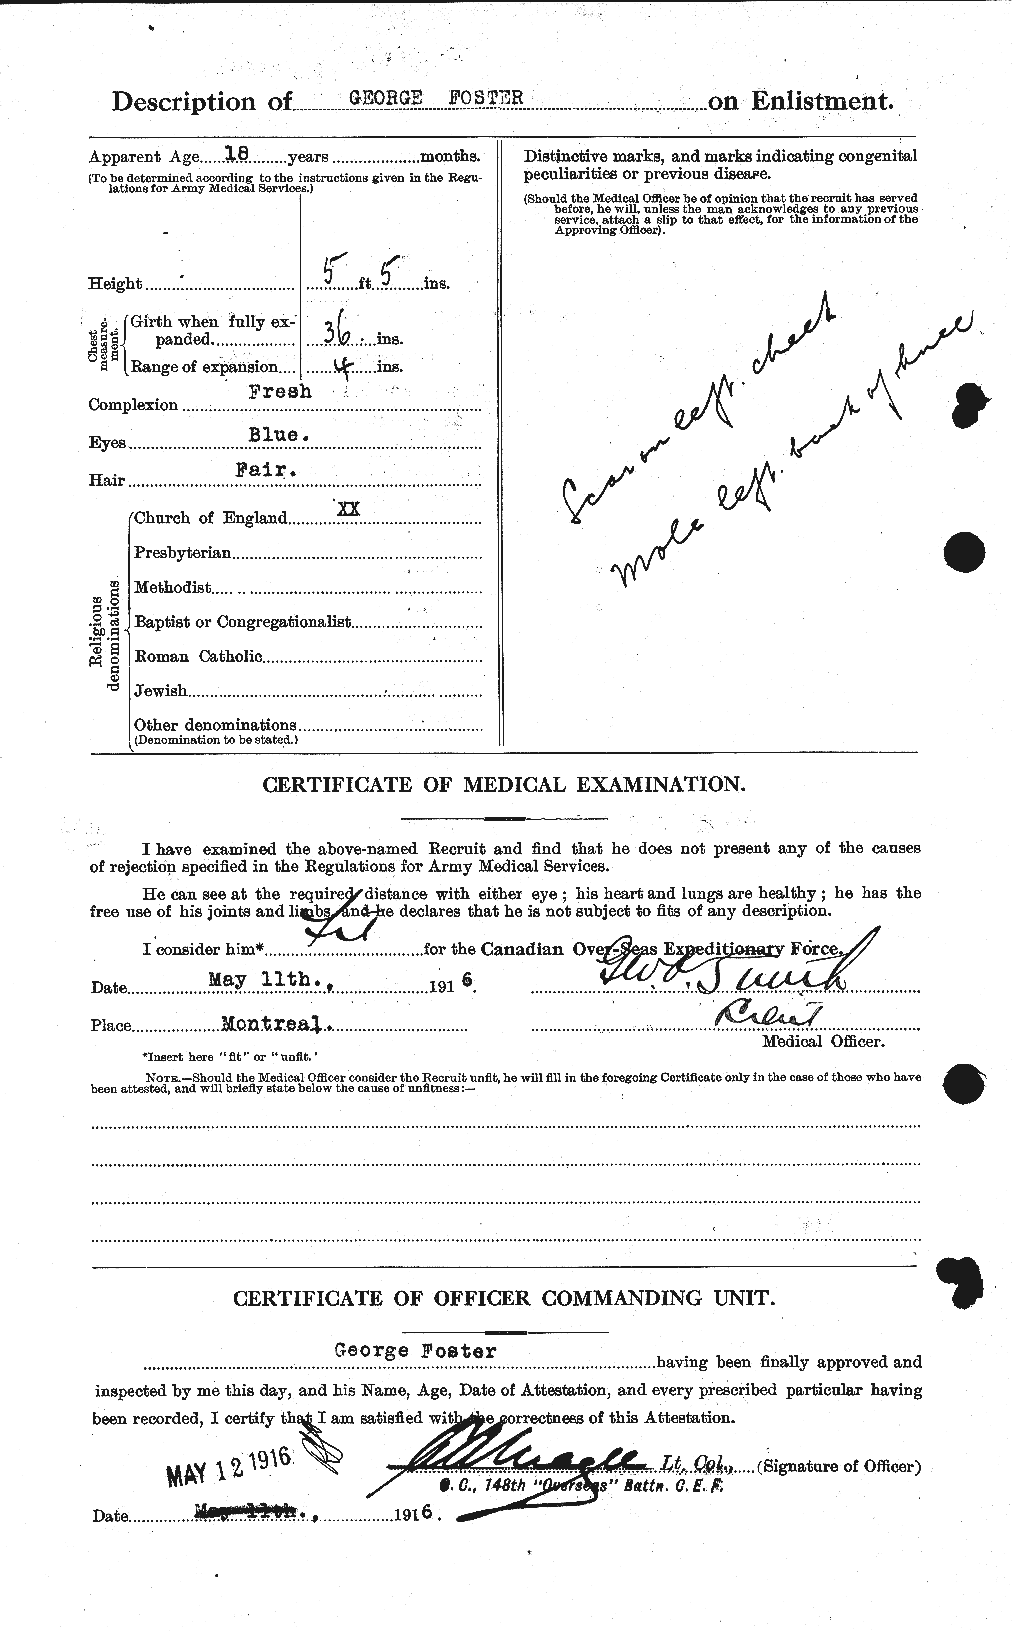 Dossiers du Personnel de la Première Guerre mondiale - CEC 330662b